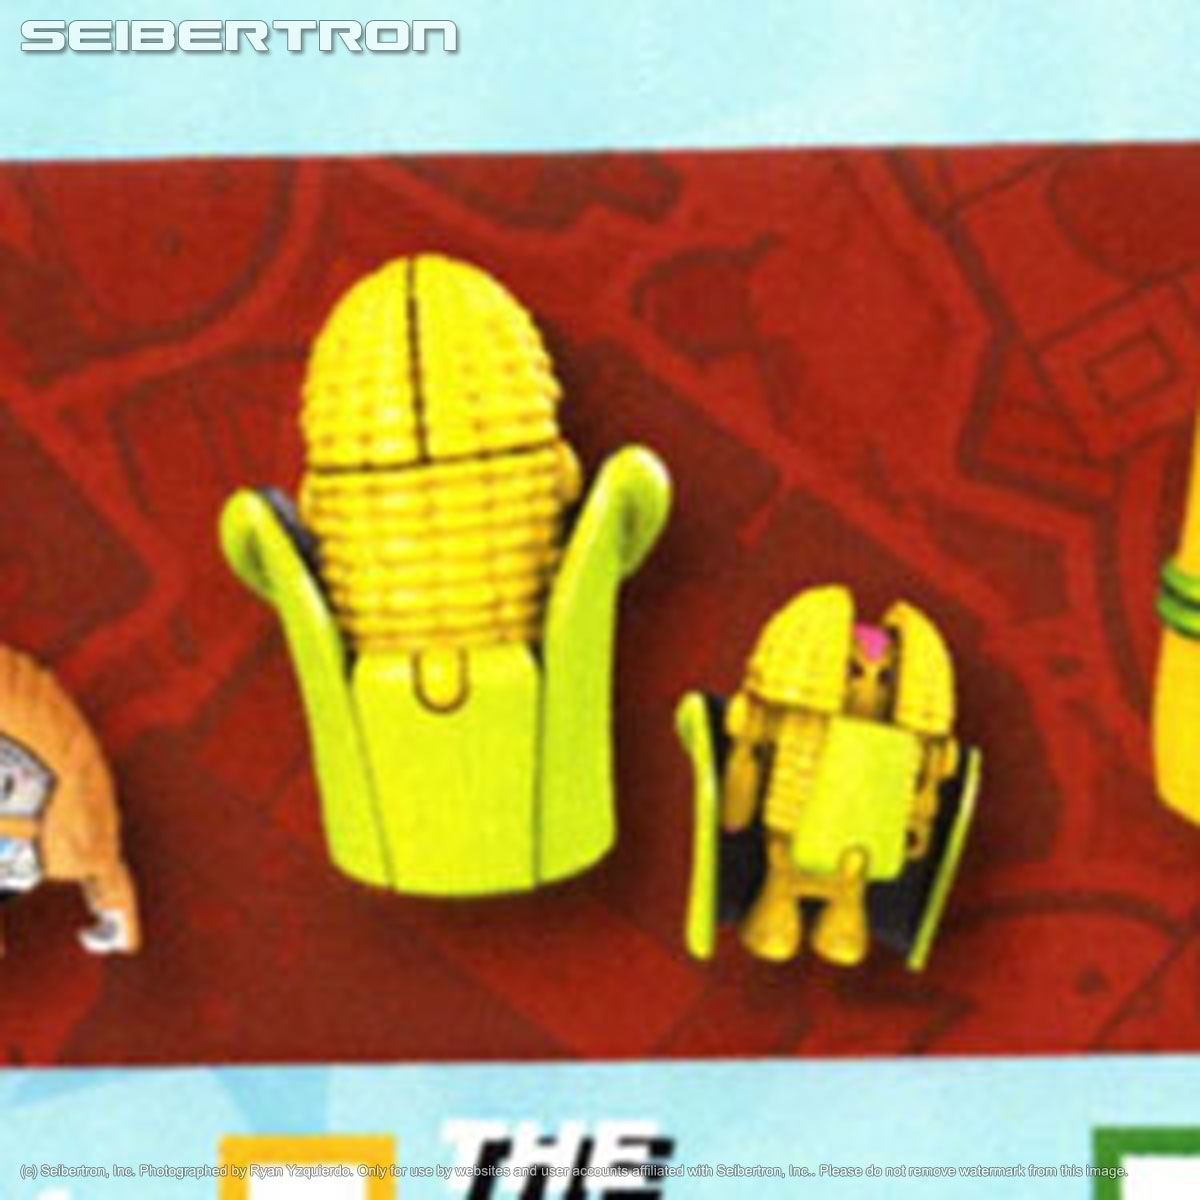 THE COBBLER Transformers BotBots Series 4 Los Deliciosos Hasbro 2020 corn on cob